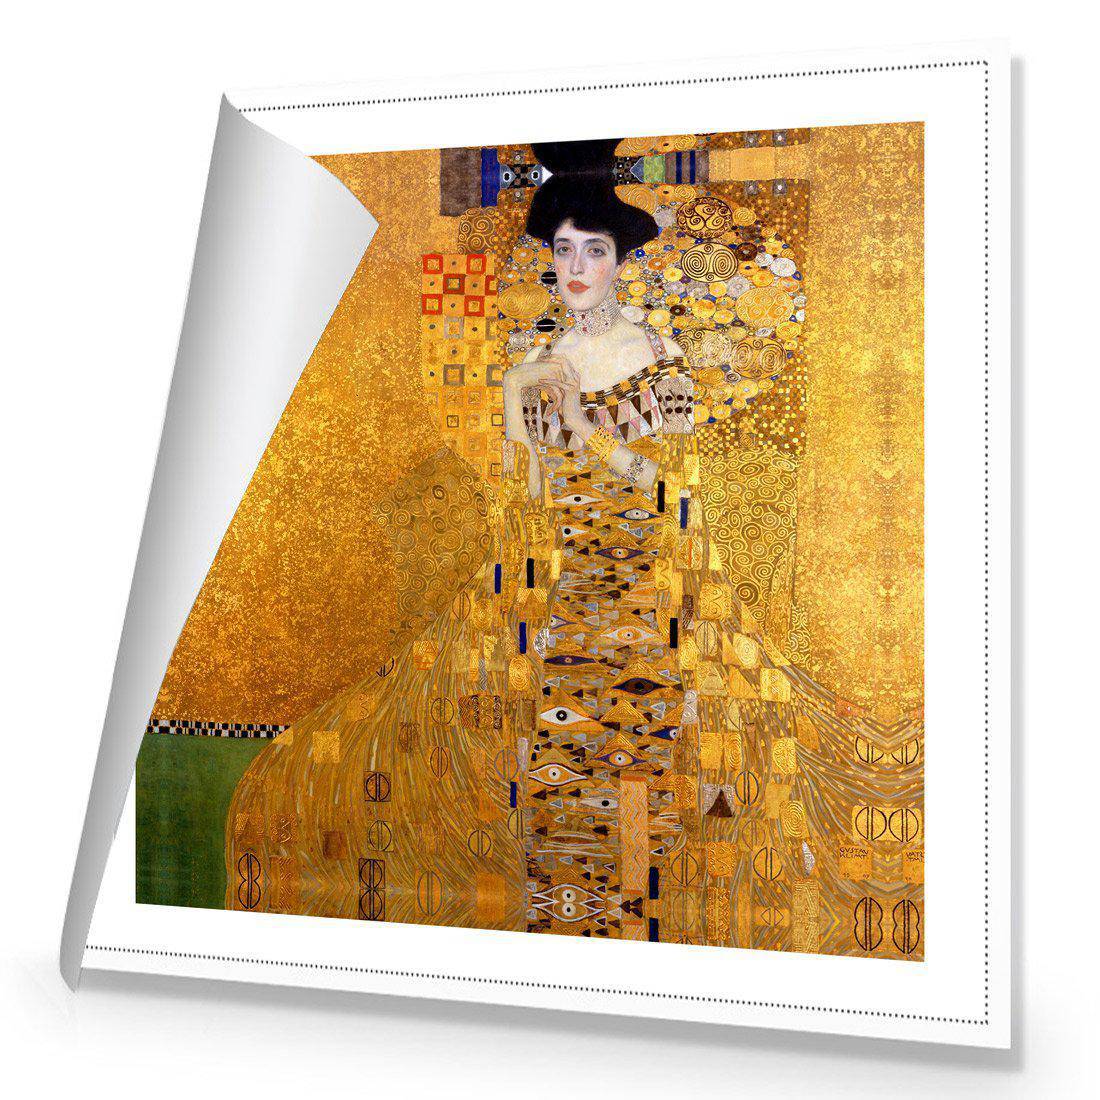 Portrait Of Adele Bloch-Bauer - Gustav Klimt Canvas Art-Canvas-Wall Art Designs-30x30cm-Rolled Canvas-Wall Art Designs